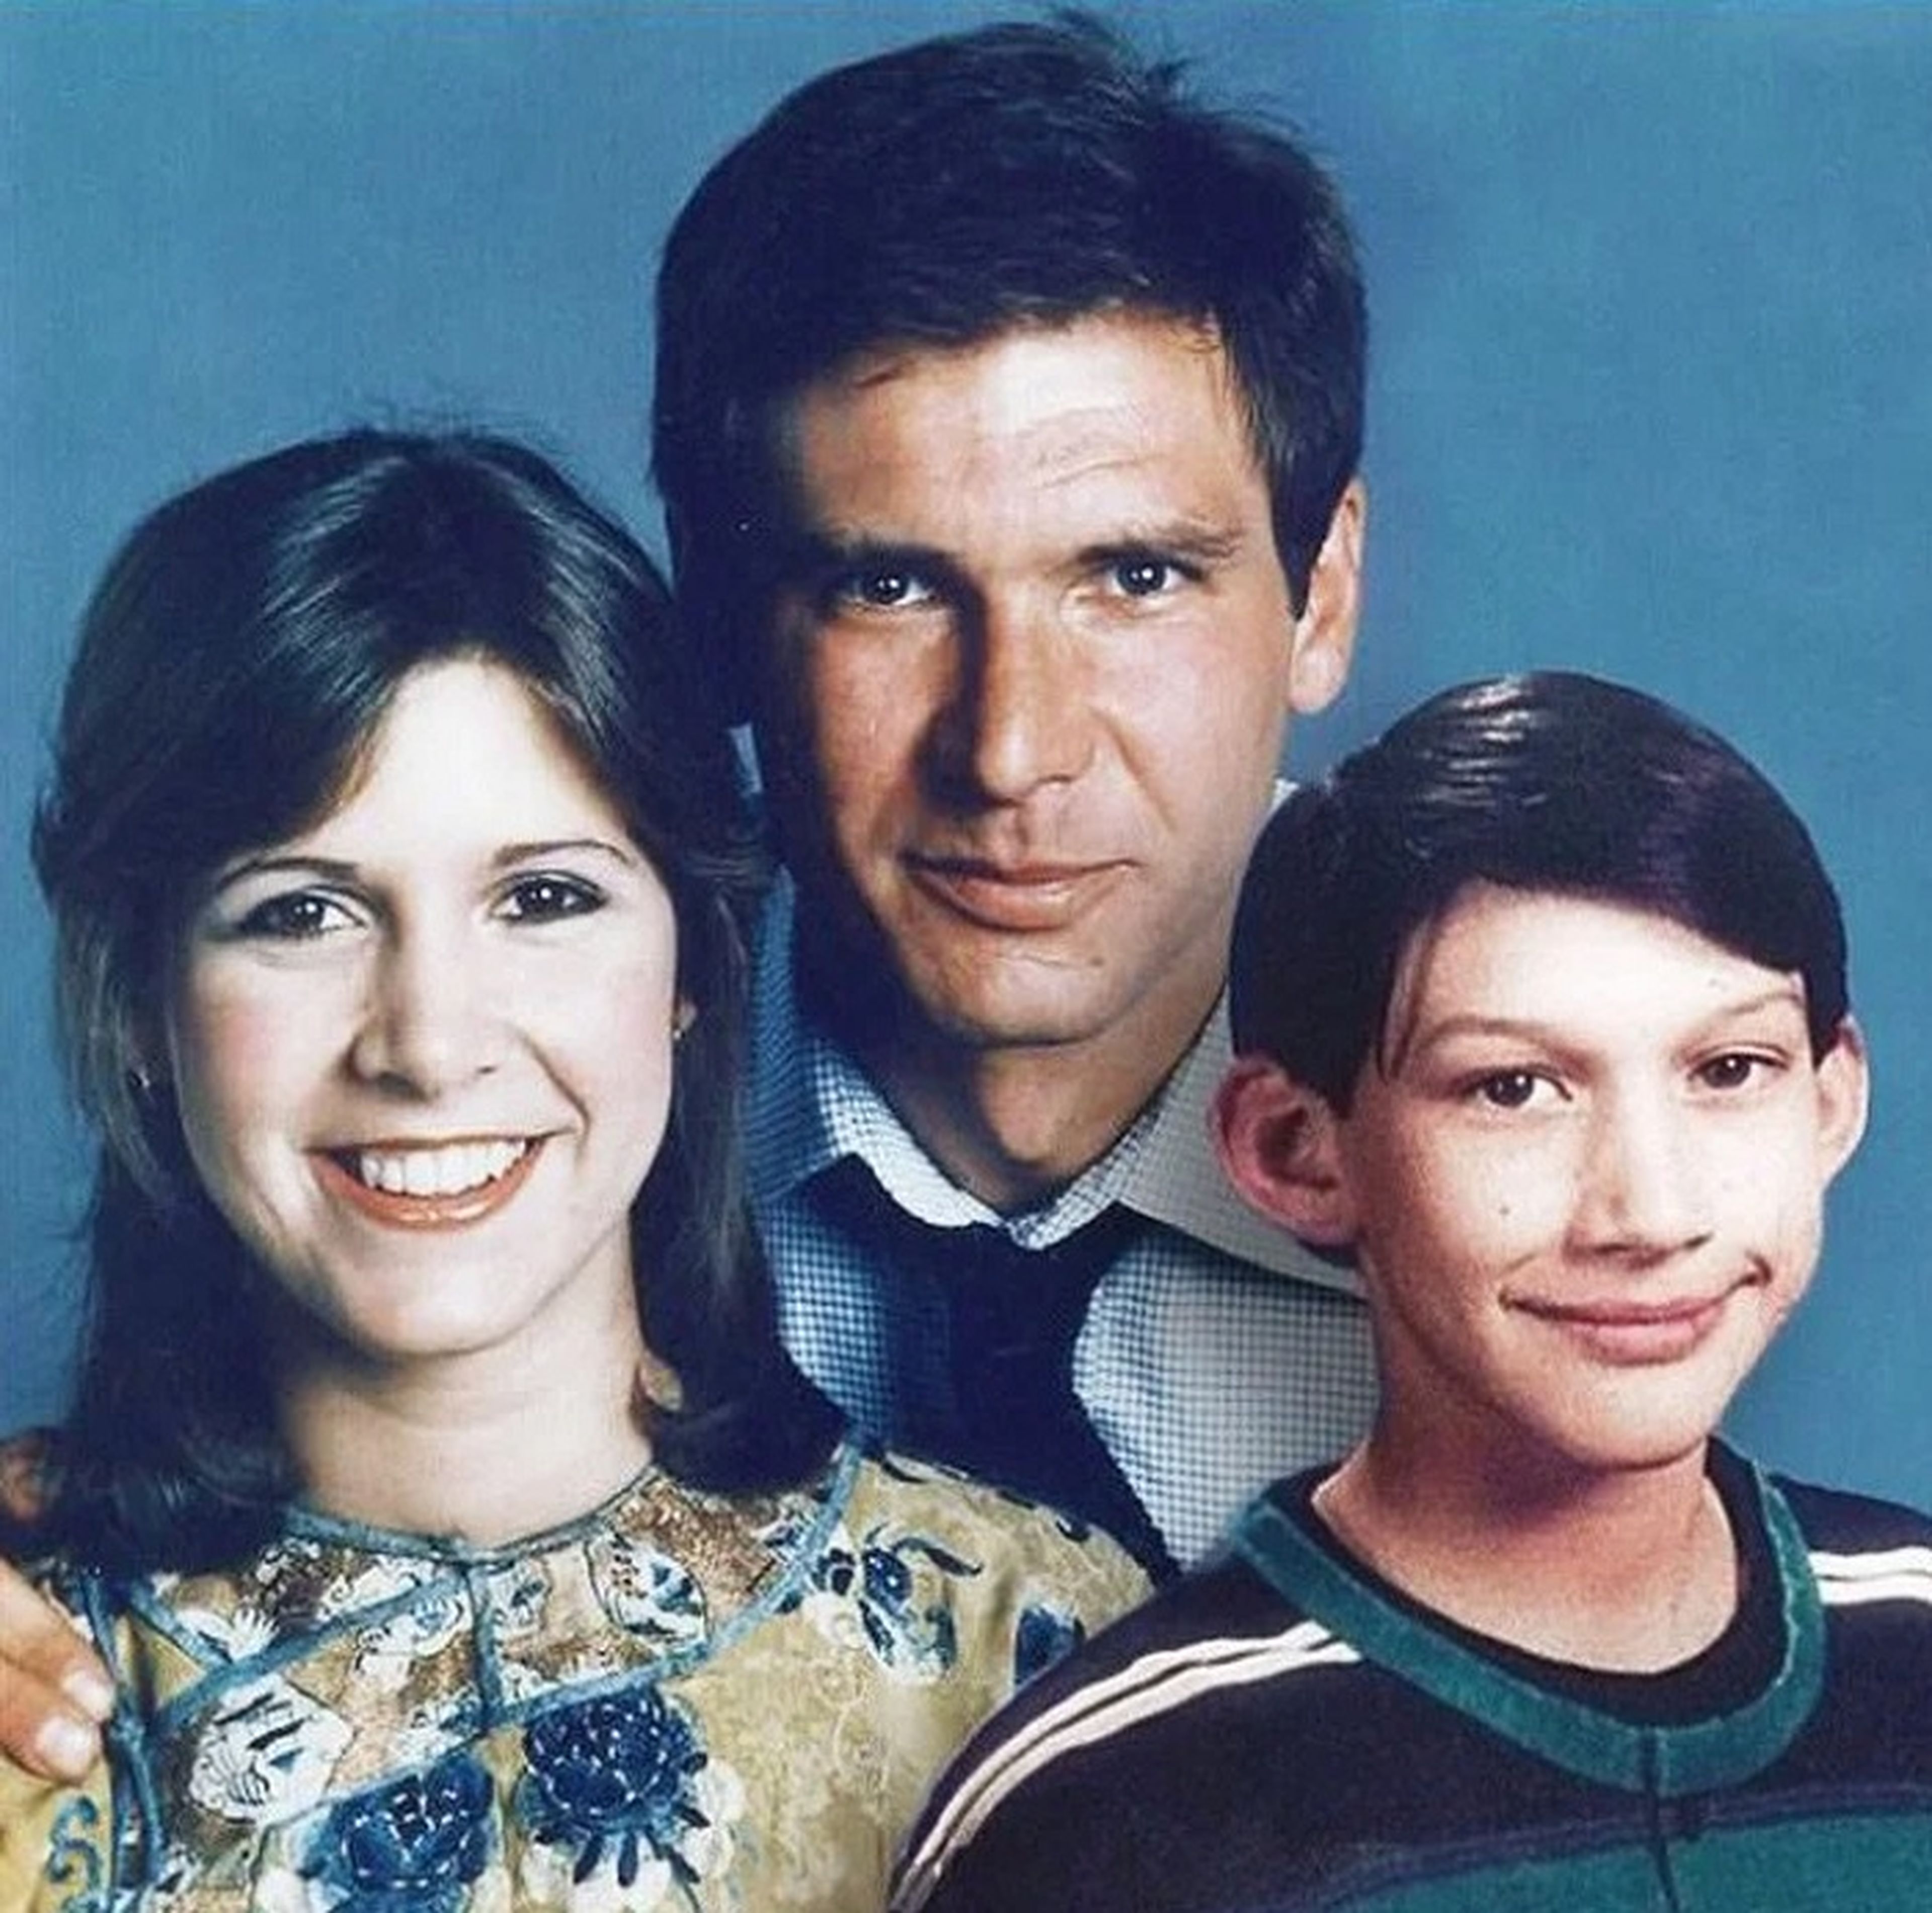 La familia Solo (Star Wars)